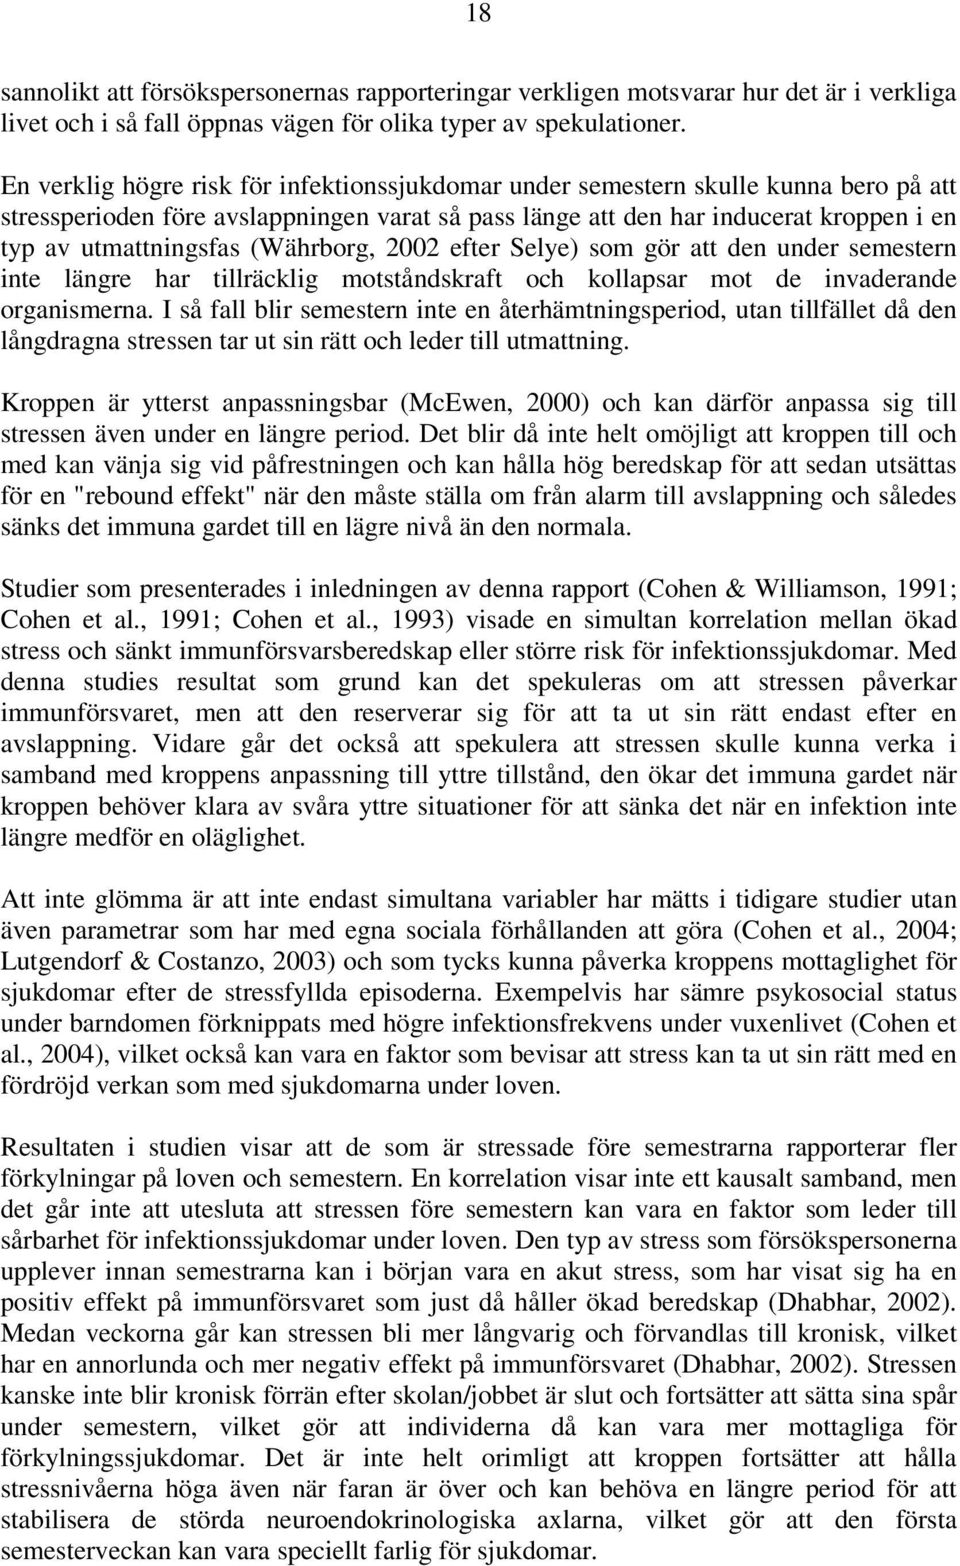 (Währborg, 2002 efter Selye) som gör att den under semestern inte längre har tillräcklig motståndskraft och kollapsar mot de invaderande organismerna.